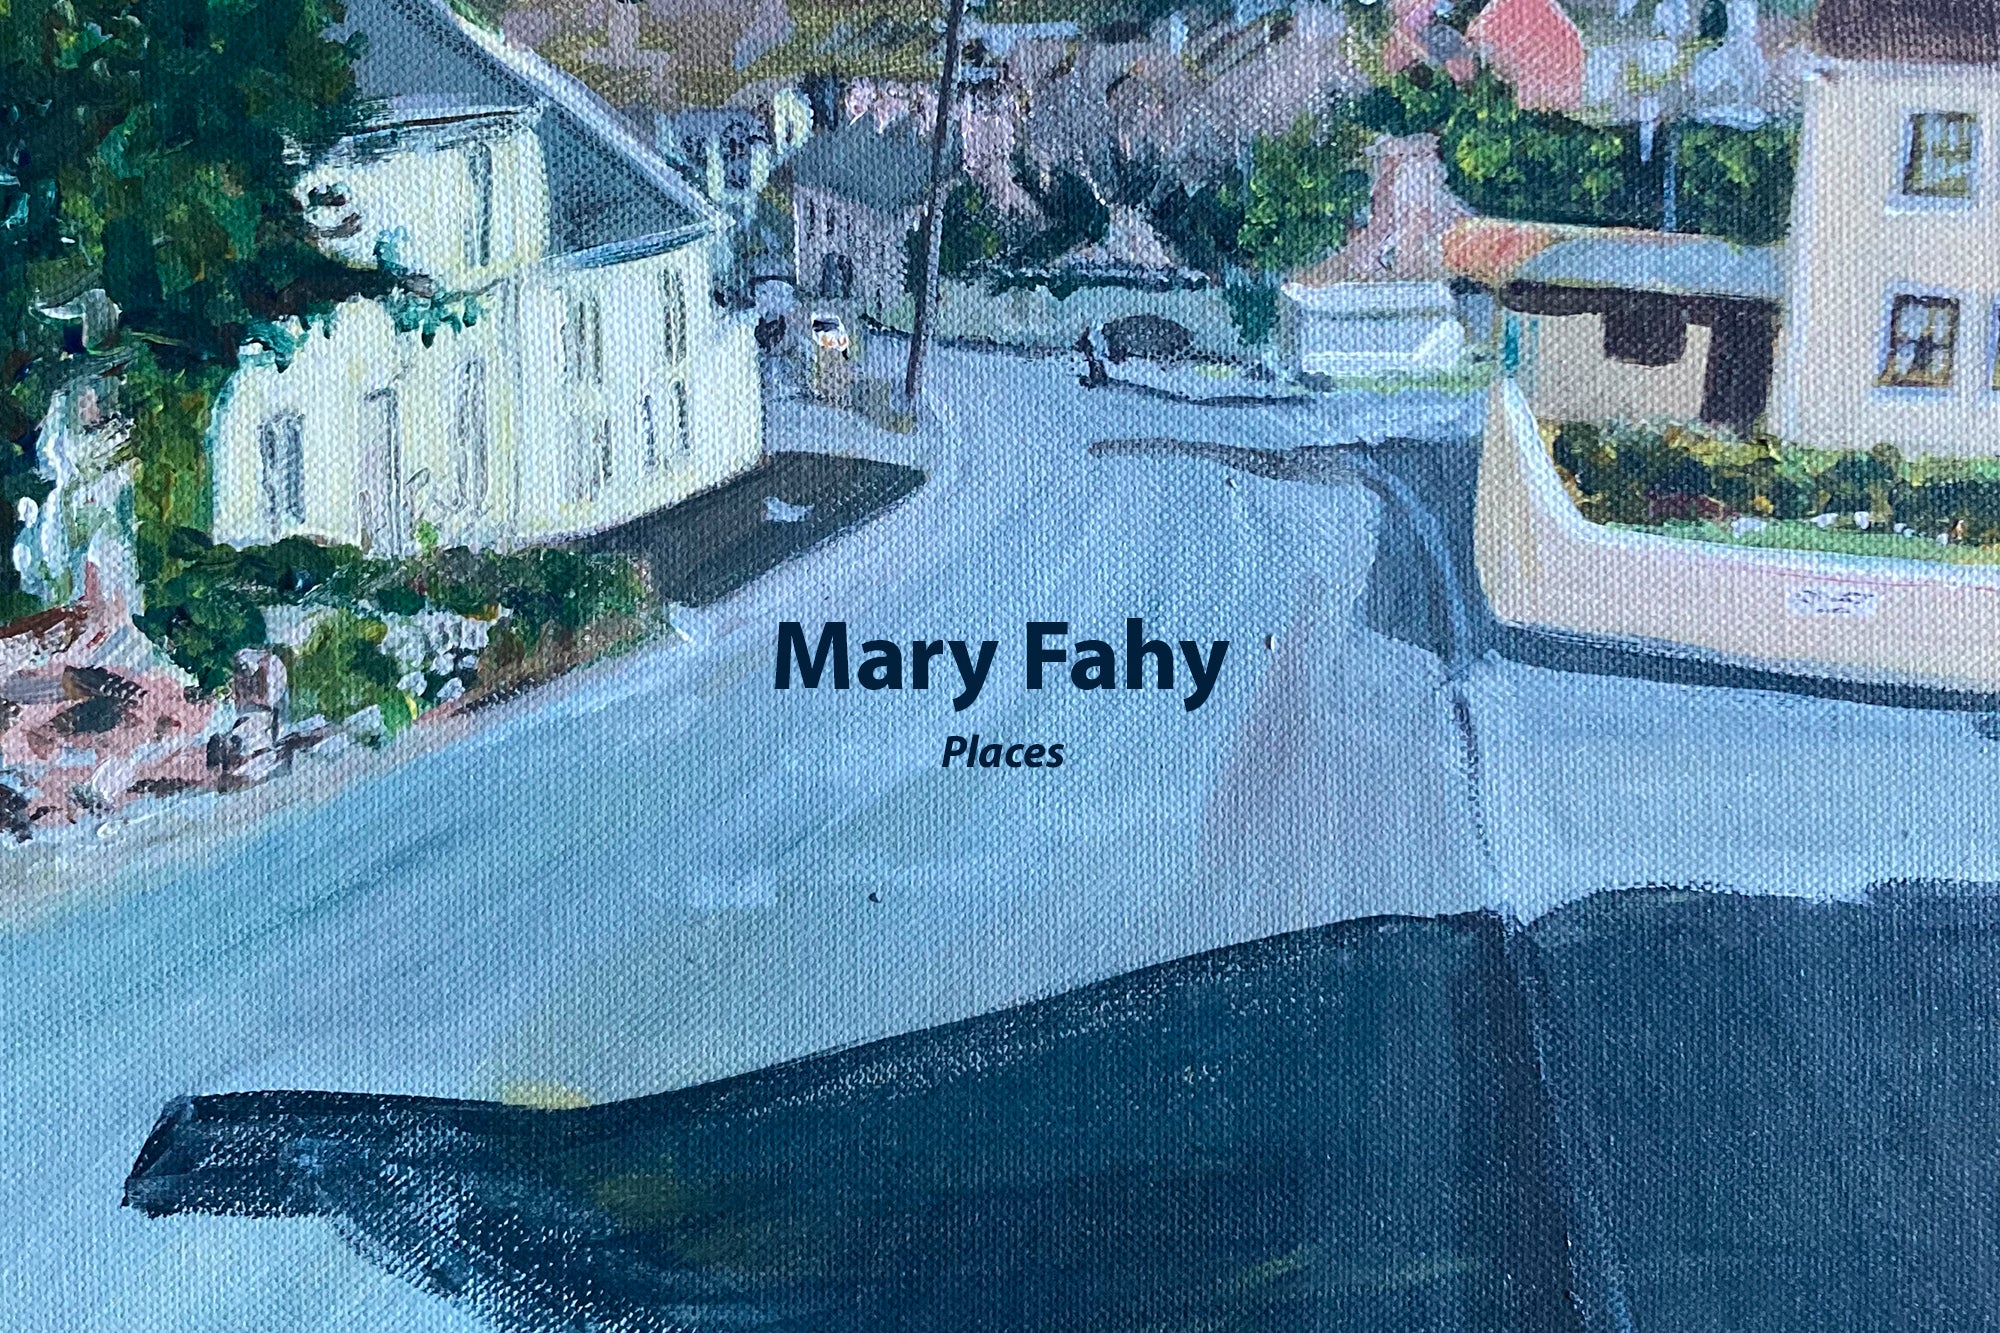 Mary Fahy ARTWALL Exhibition